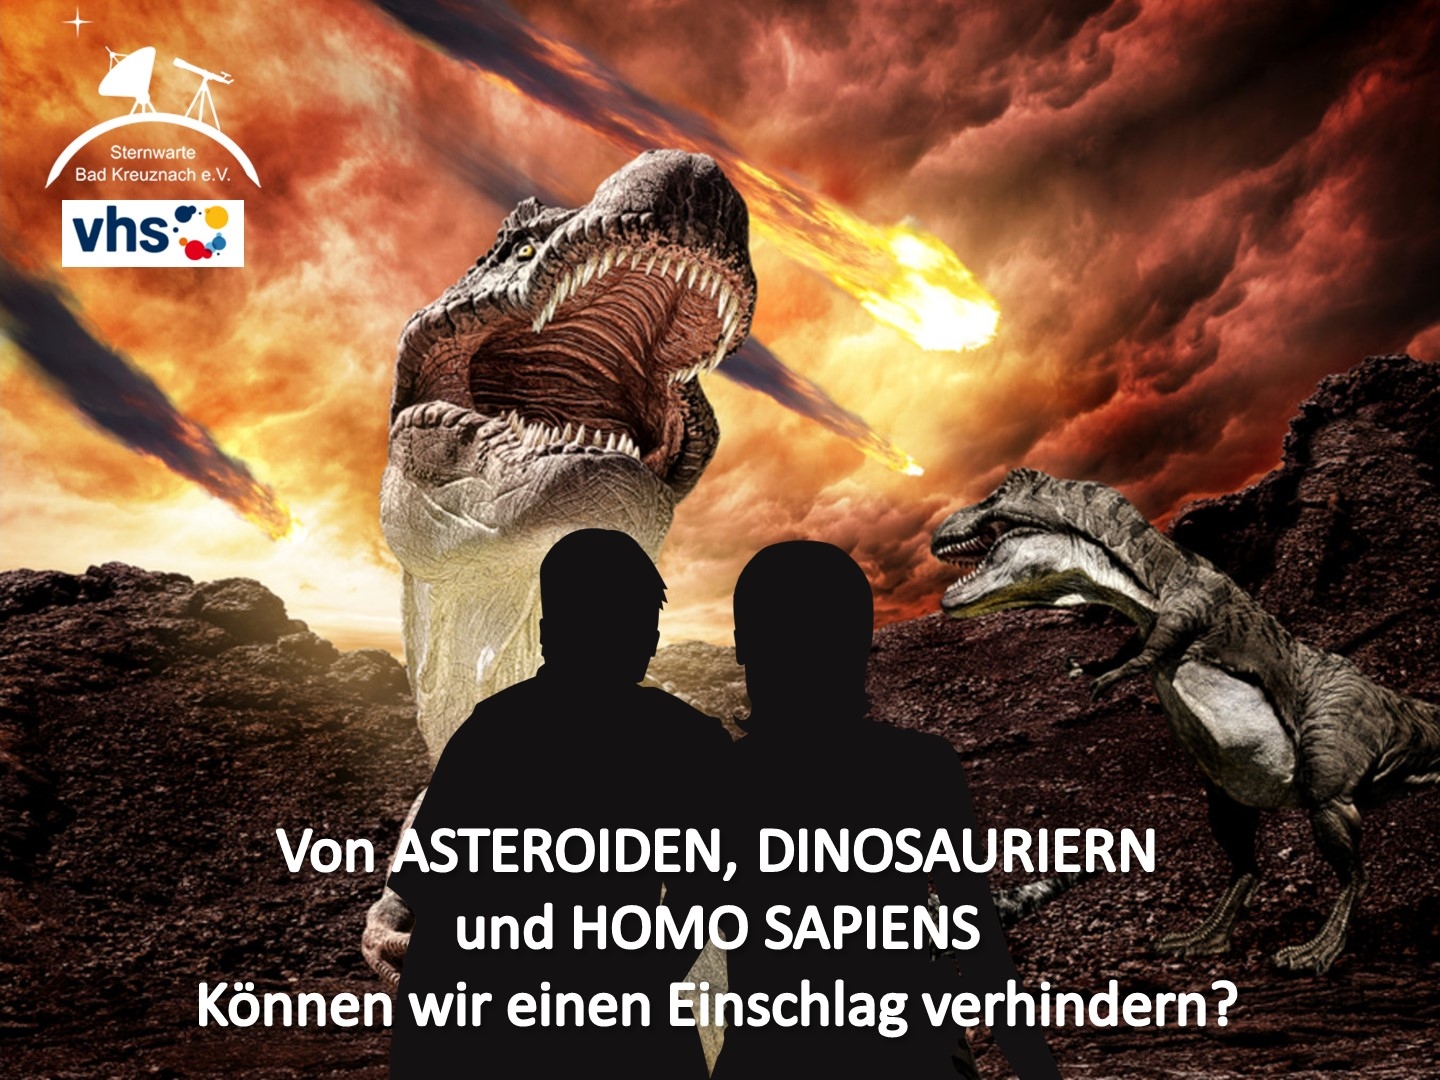 von-asteroiden-dinosauriern-und-homo-sapiens-title.jpg